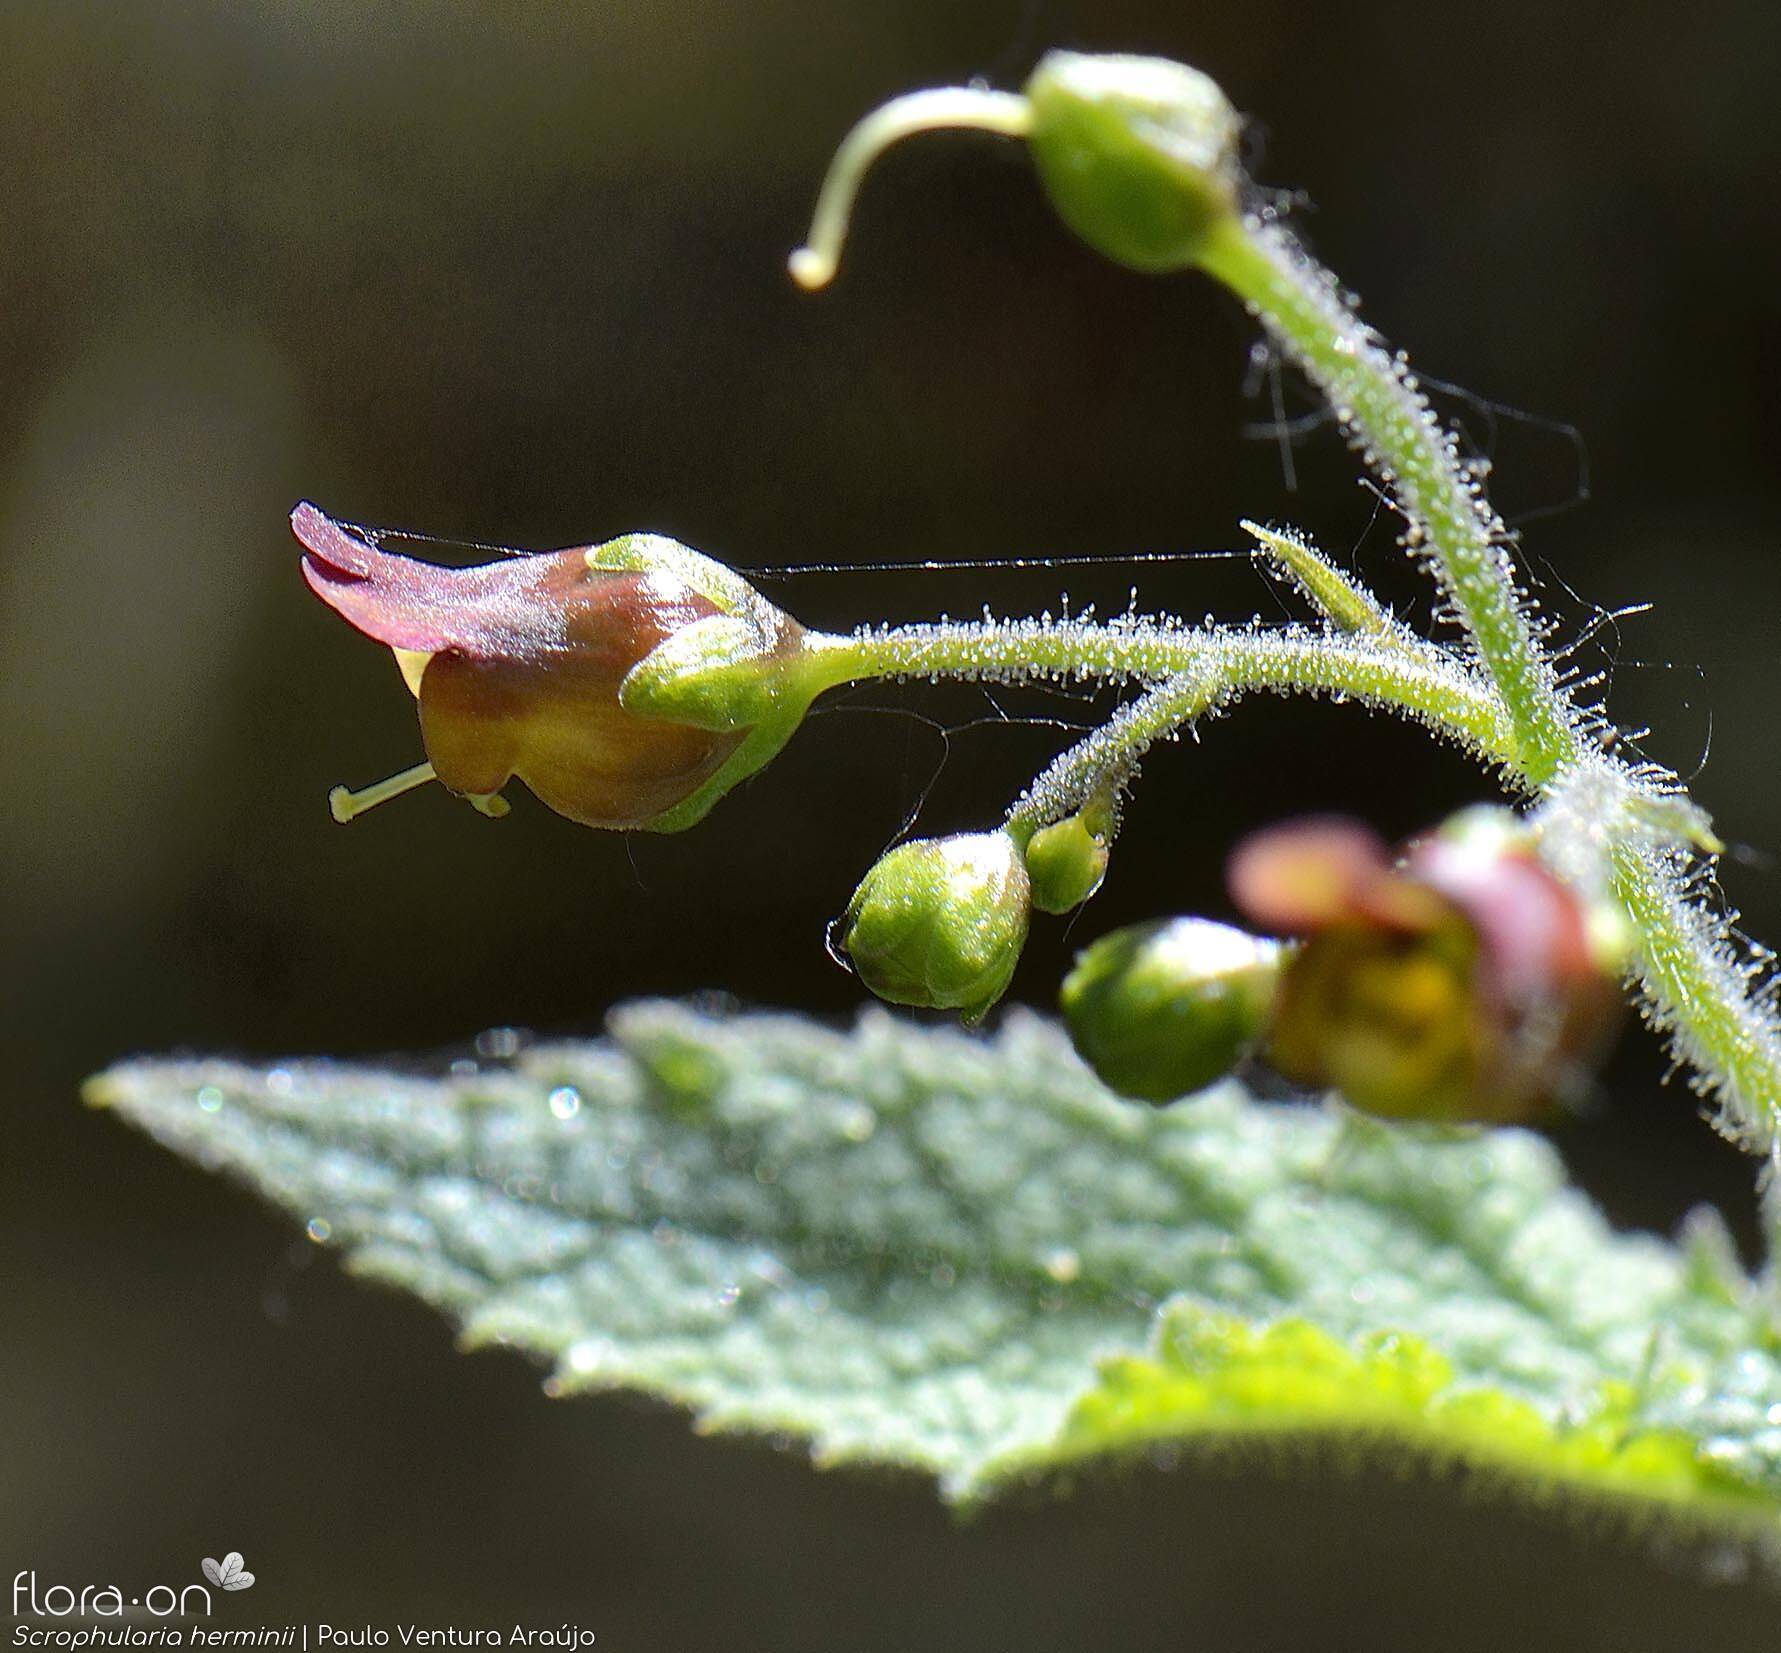 Scrophularia herminii - Flor (close-up) | Paulo Ventura Araújo; CC BY-NC 4.0